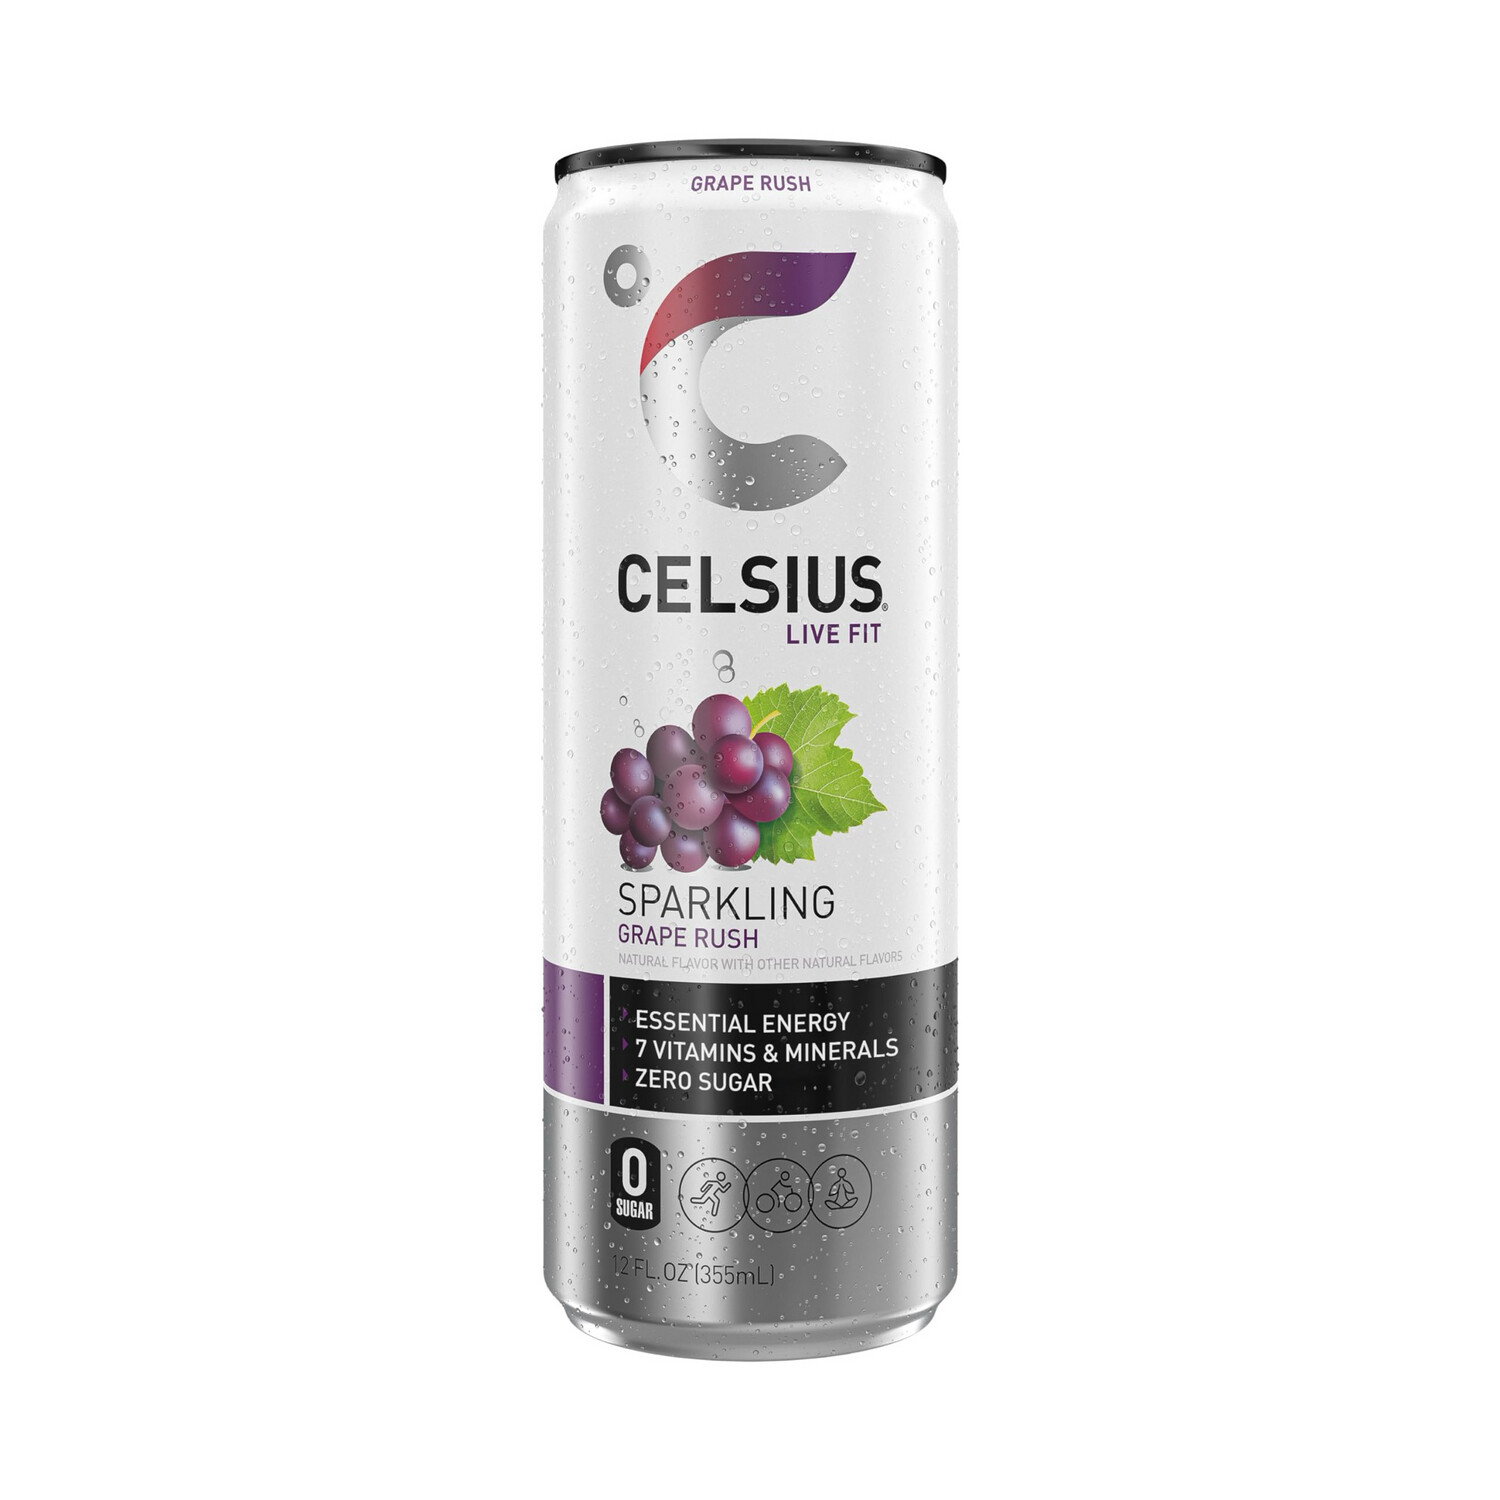 Celsius Live Fit Sparkling Grape